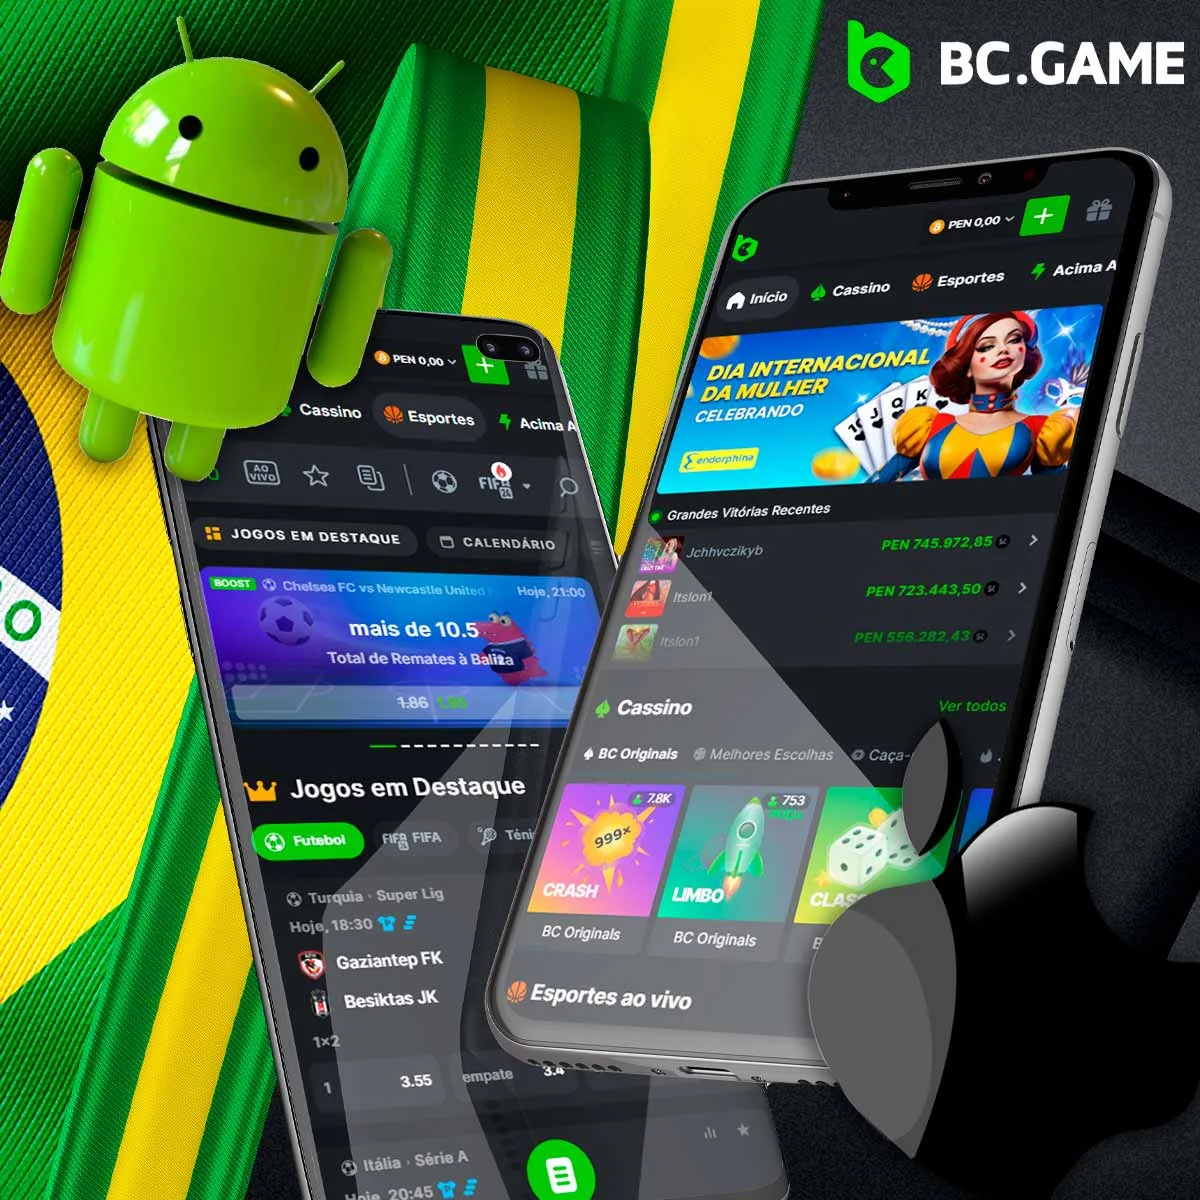 Aplicação móvel da casa de apostas BC Game